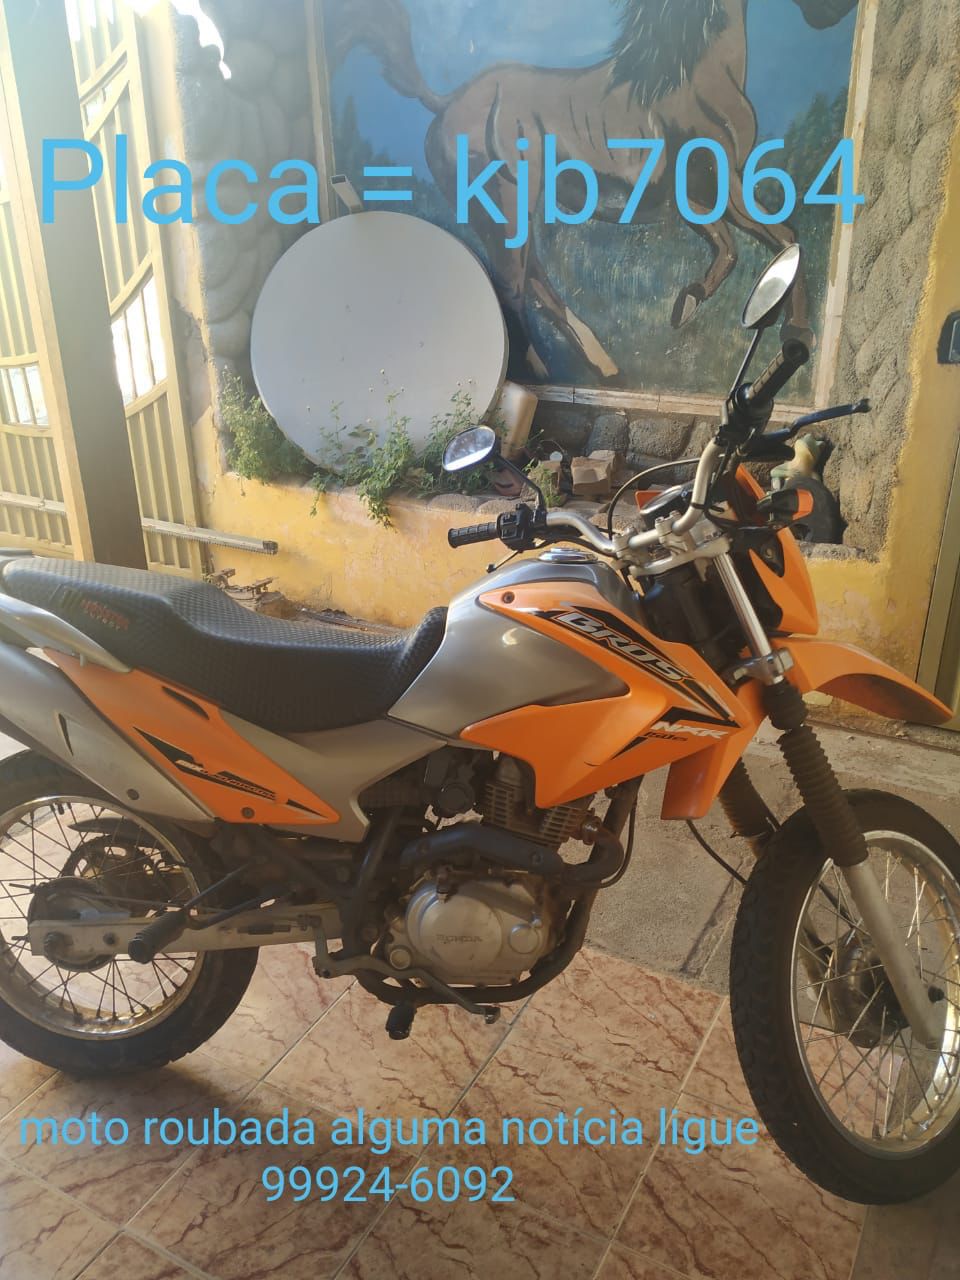 Câmera de segurança flagra furto de moto em Picos